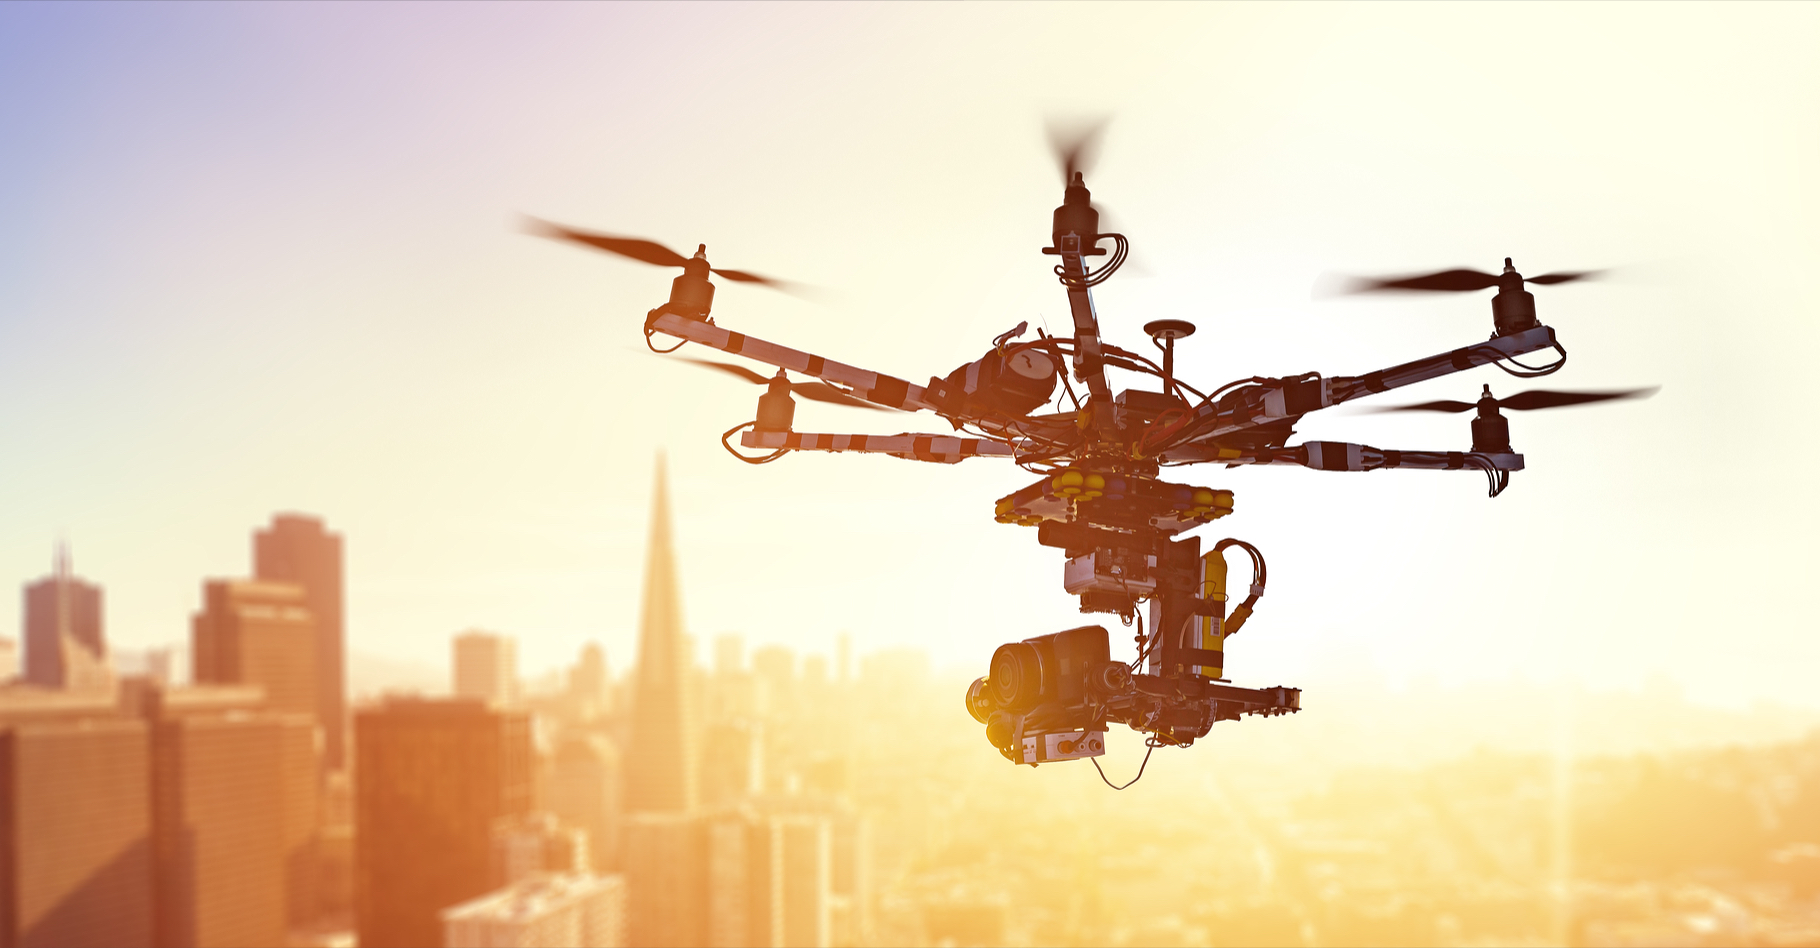 Le matériau composite imaginé par des chercheurs de l’École polytechnique fédérale de Lausanne permettra-t-il de transformer, à la demande, un drone en voiture ? © Alexey Yuzhakov, Shutterstock